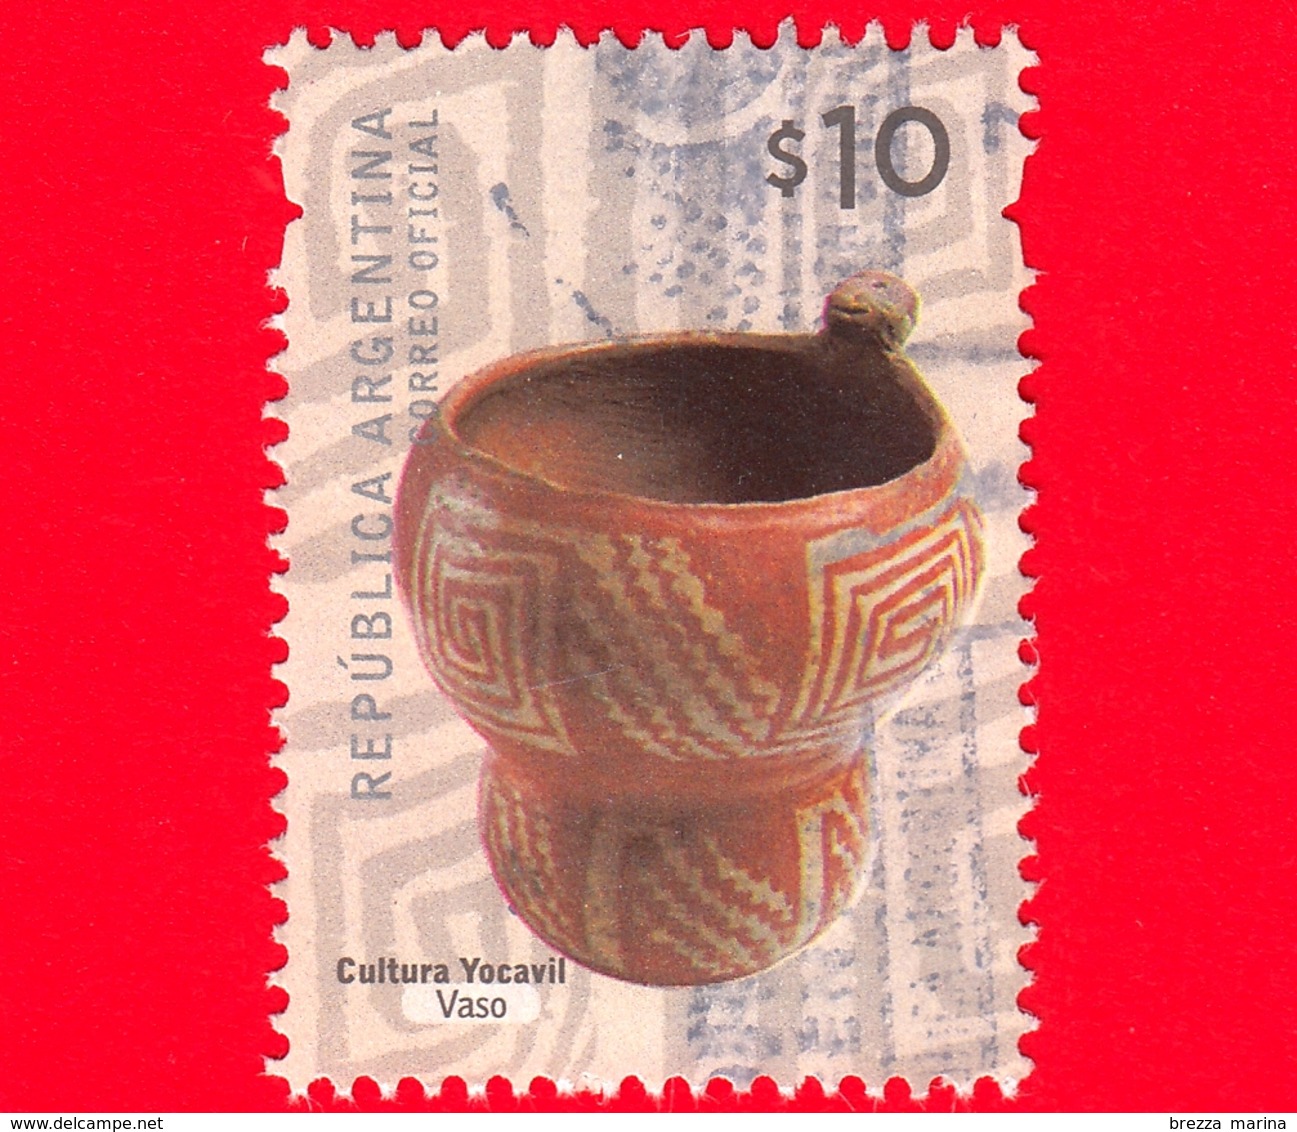 ARGENTINA - Usato - 2008 - Ceramica Cultura Yocavil - Vaso - $ 10 - Gebruikt